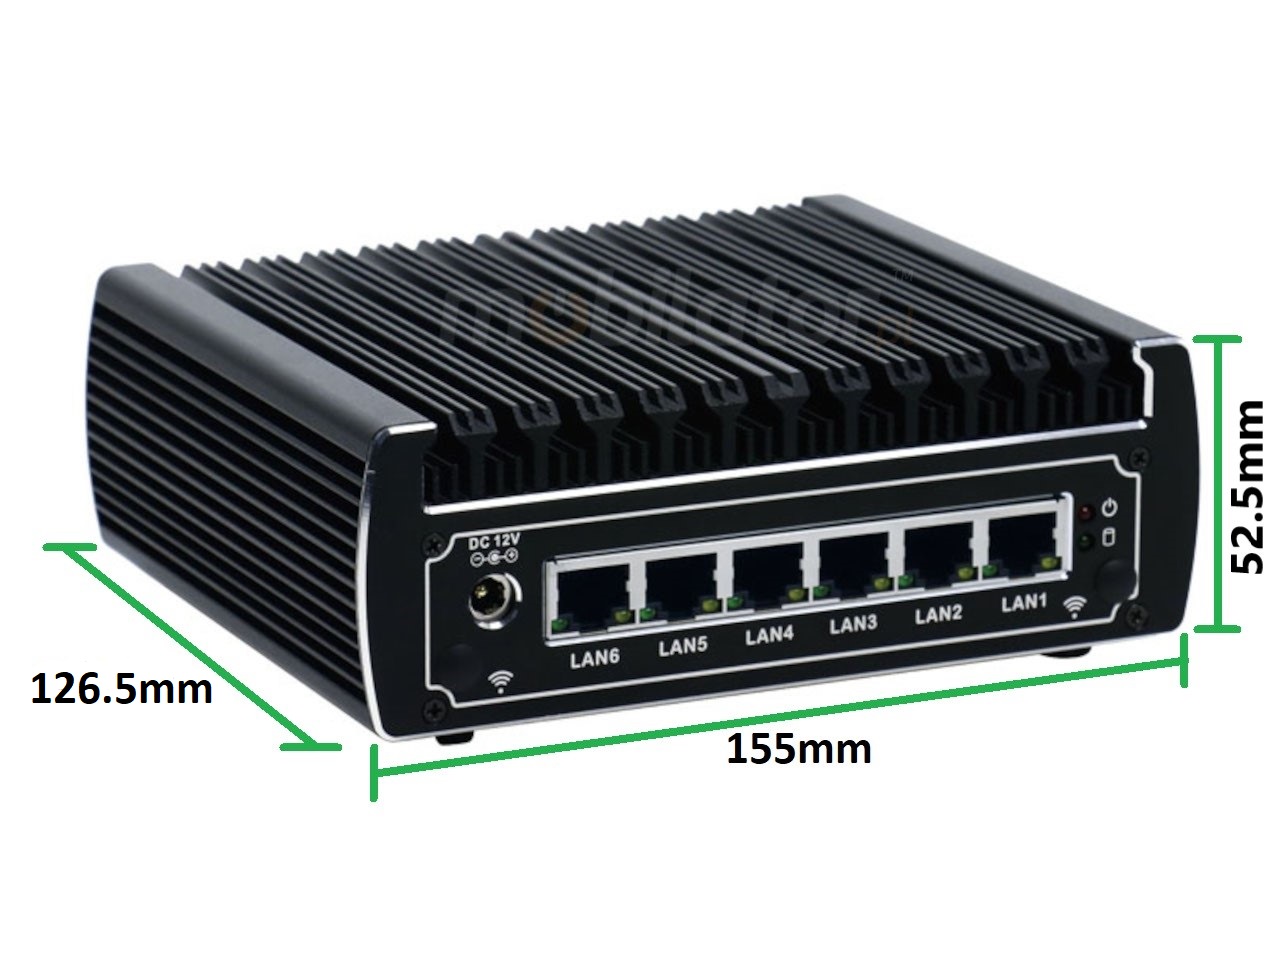   IBOX N133 v.11, wymiary SSD DDR4 , przemysłowy, mały, szybki, niezawodny, fanless, industrial, small, LAN, INTEL i3